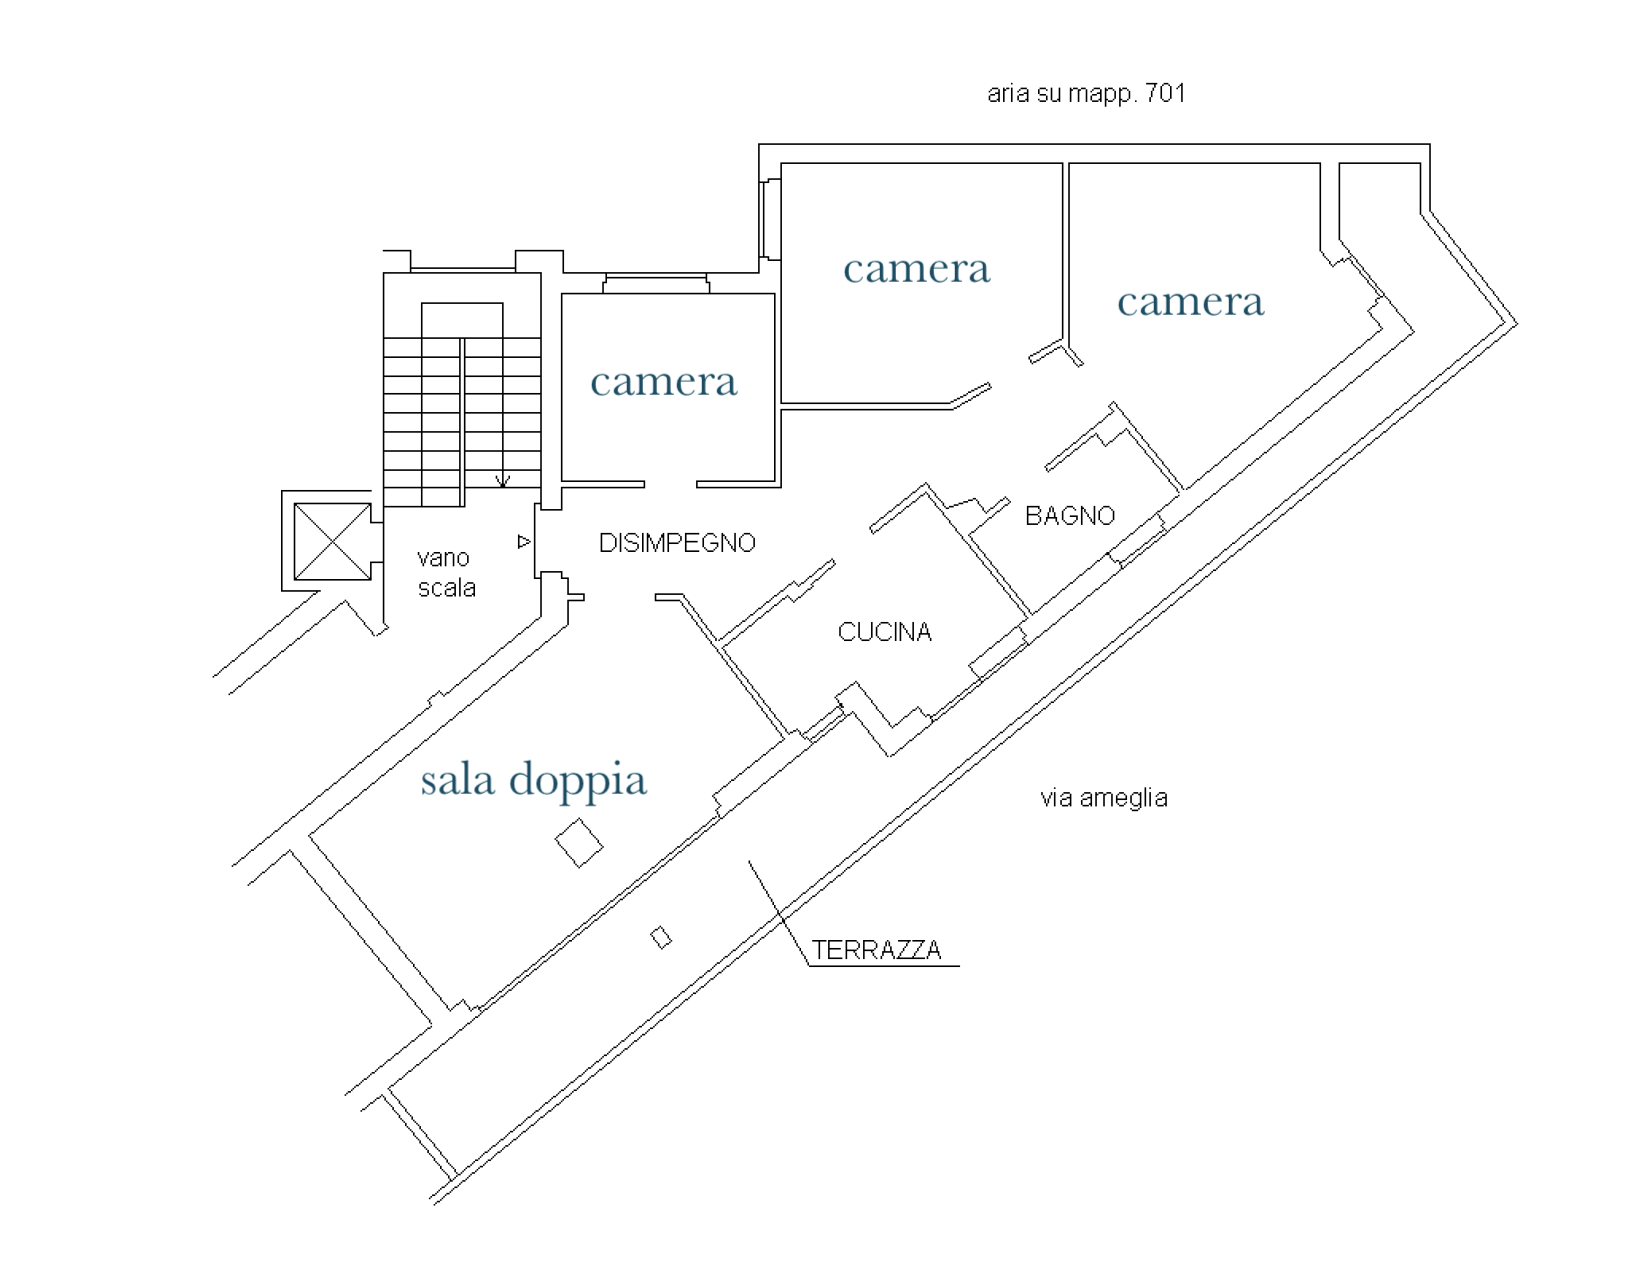 Romito Magra (SP) – luminoso attico 5 vani con balconata vivibile